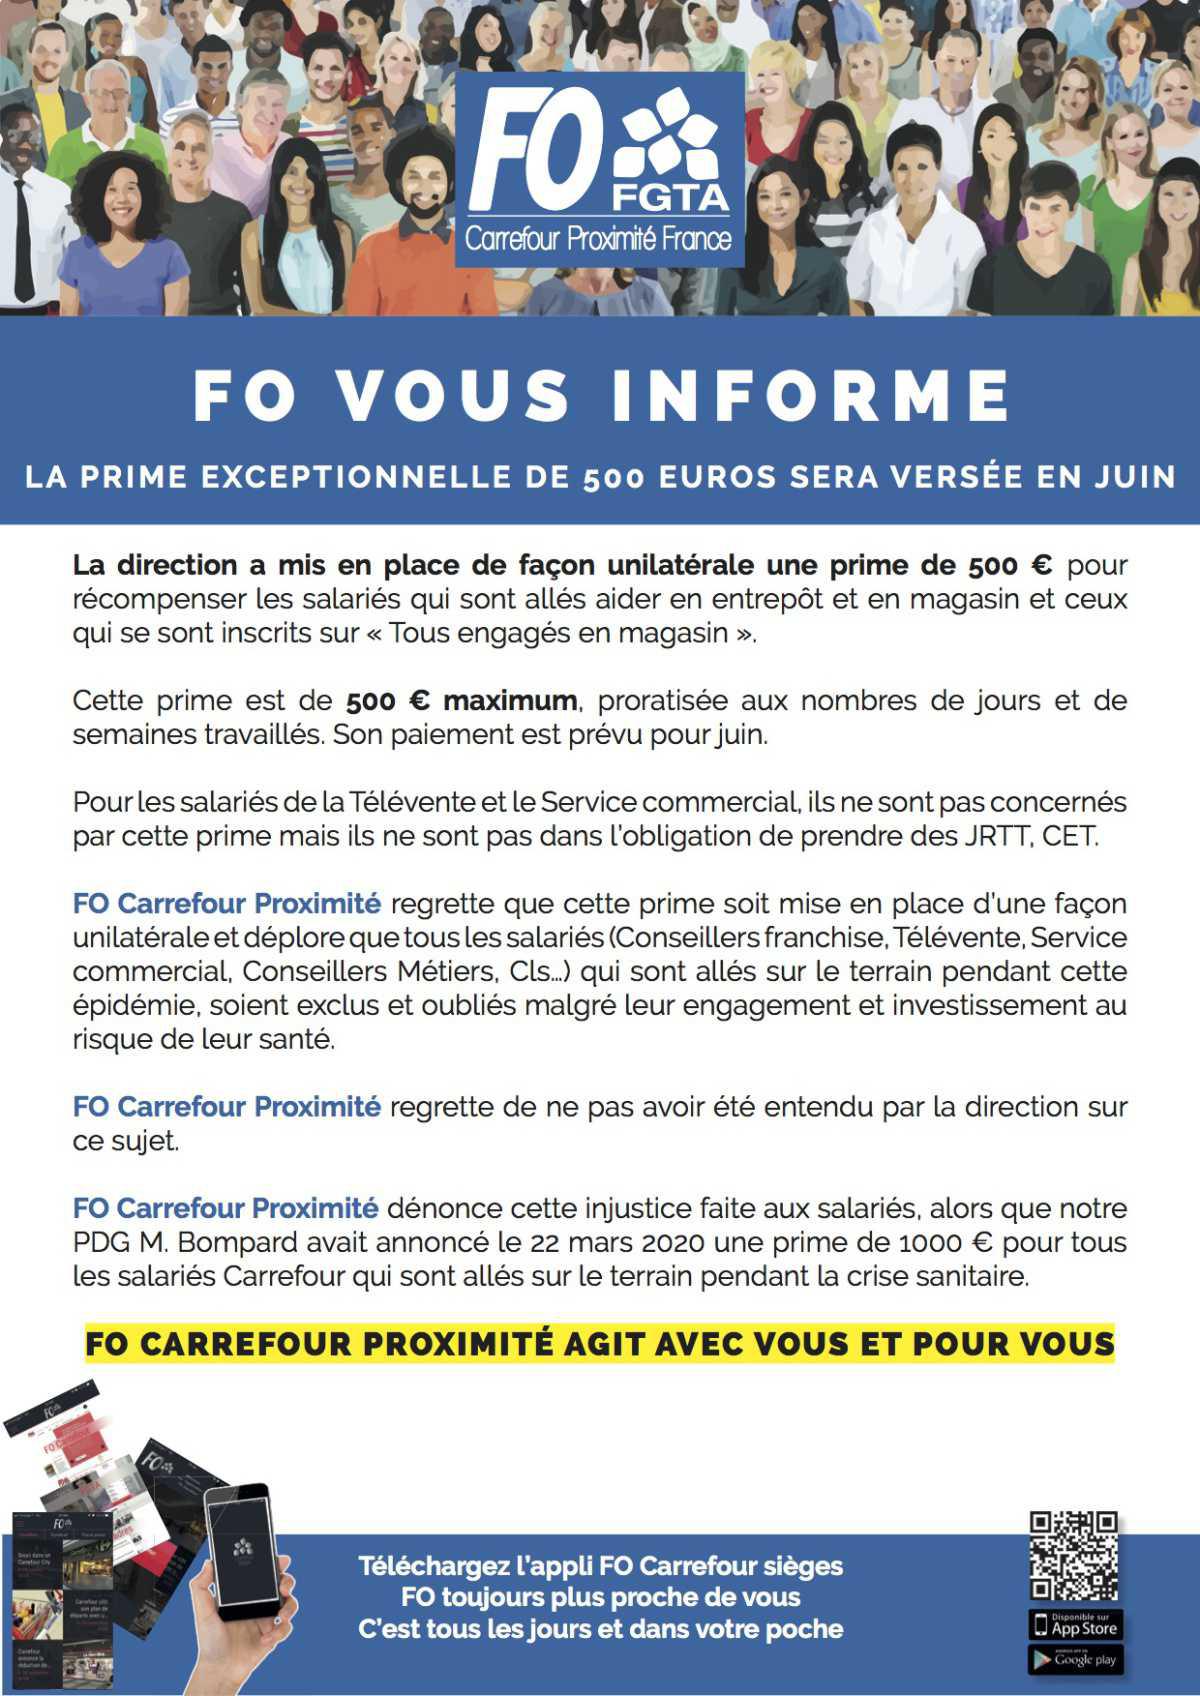 FO Carrefour Proximité vous informe!